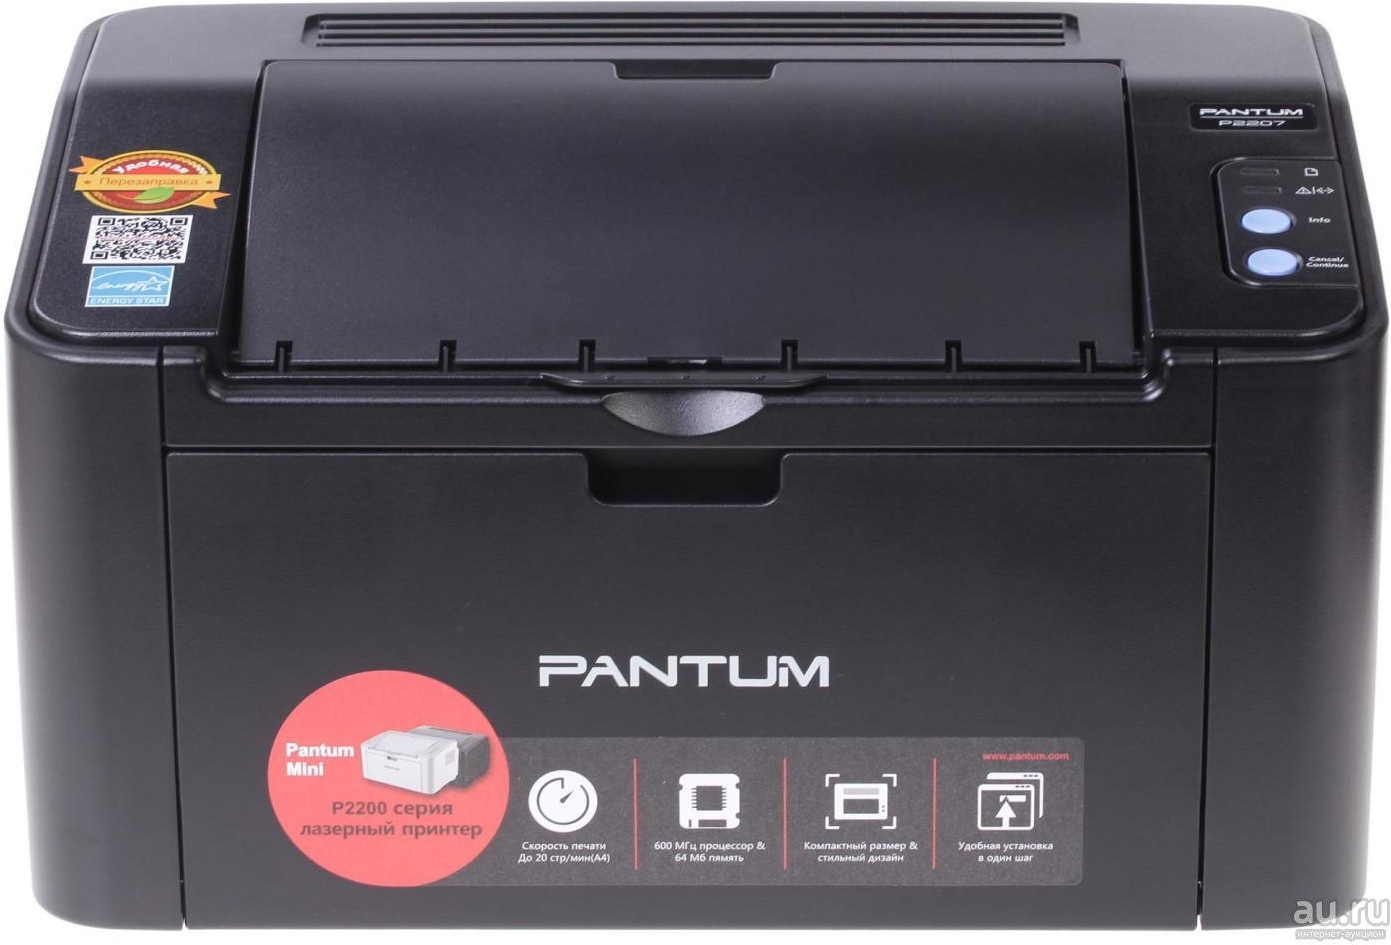 Купить принтер pantum p2207. Принтер лазерный Pantum p2502. Принтер Pantum 2207. Принтер Pantum p2500. Принтер лазерный Pantum p2207.